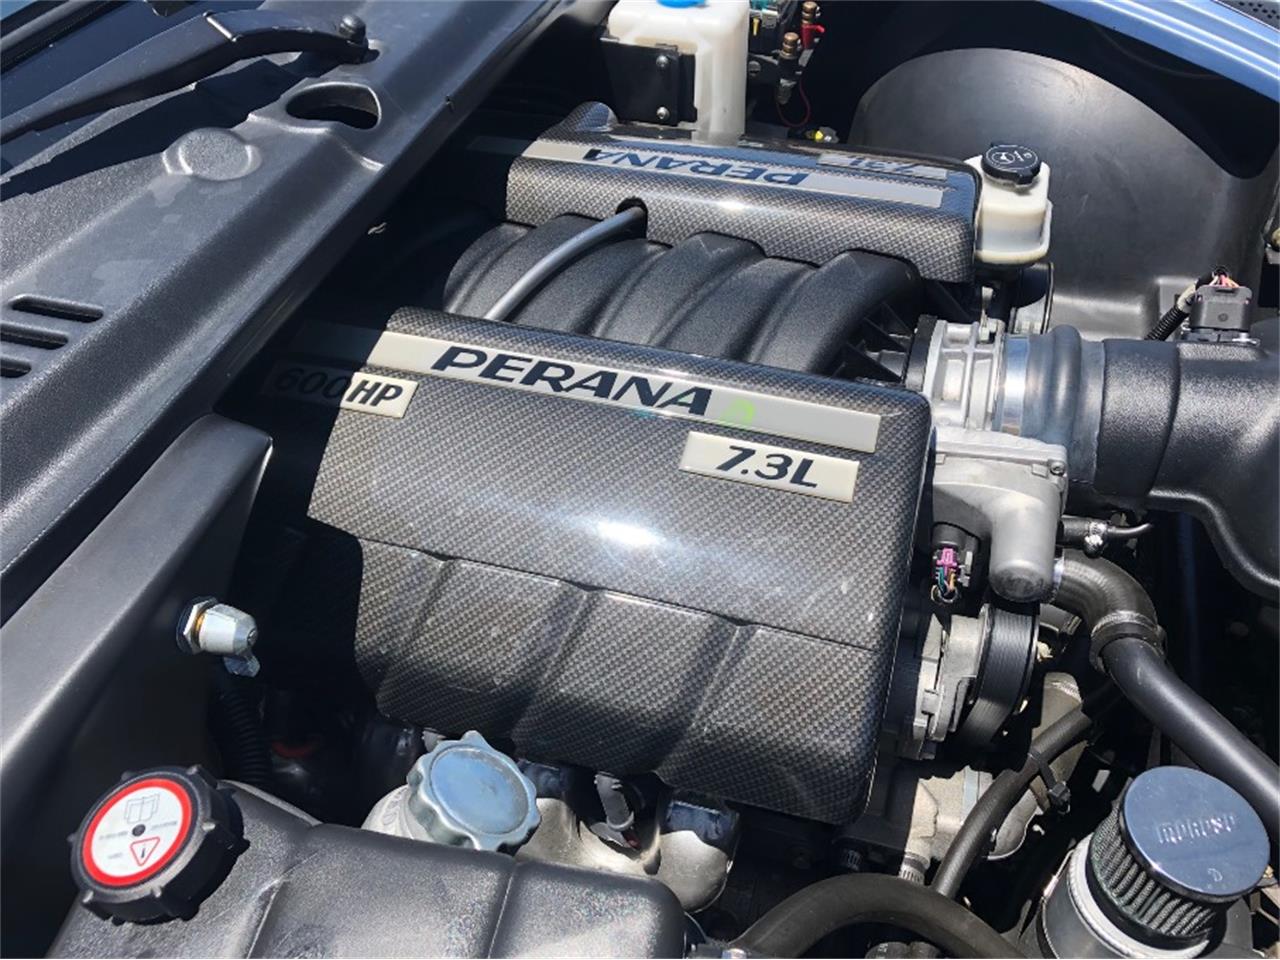 7.3-liter V8 LS7 engine